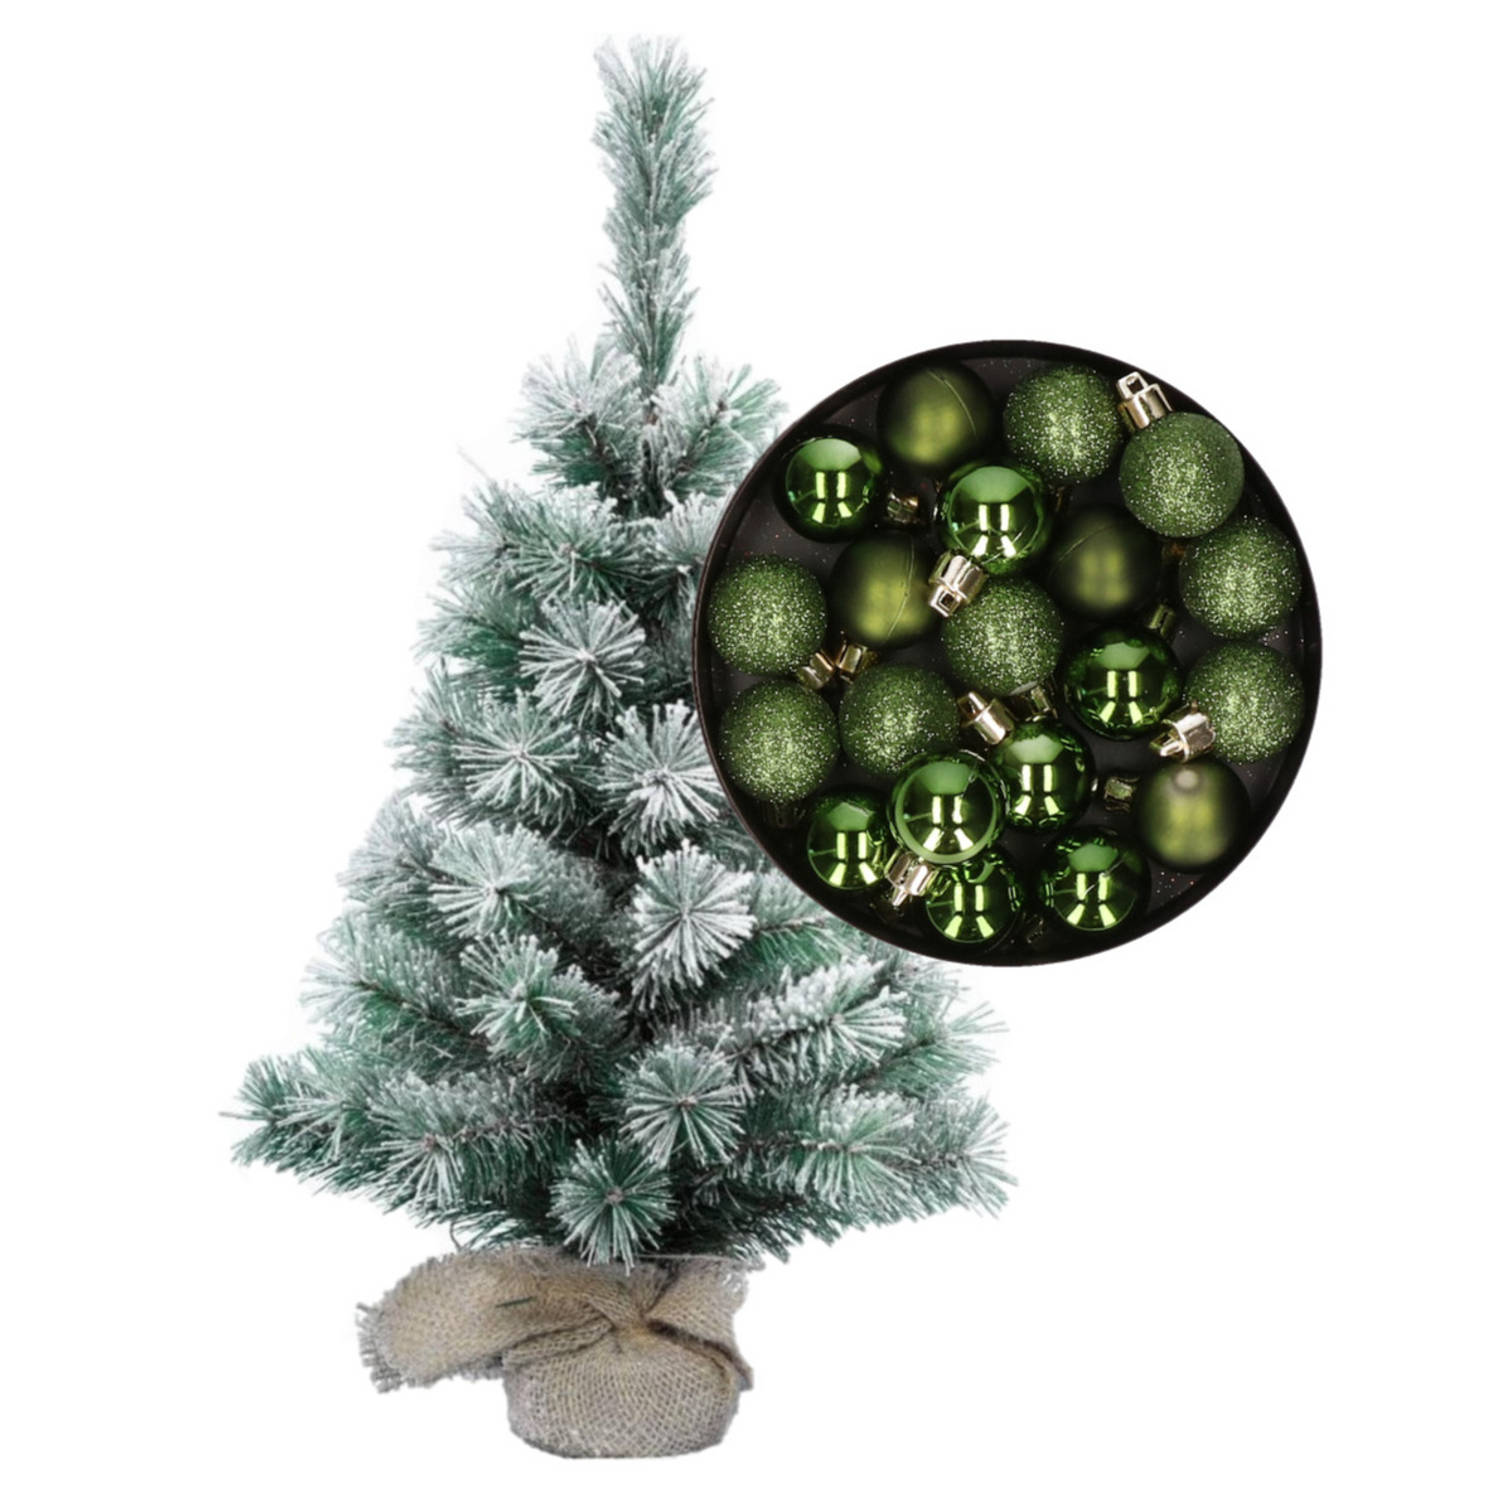 Besneeuwde mini kerstboom-kunst kerstboom 35 cm met kerstballen groen Kunstkerstboom